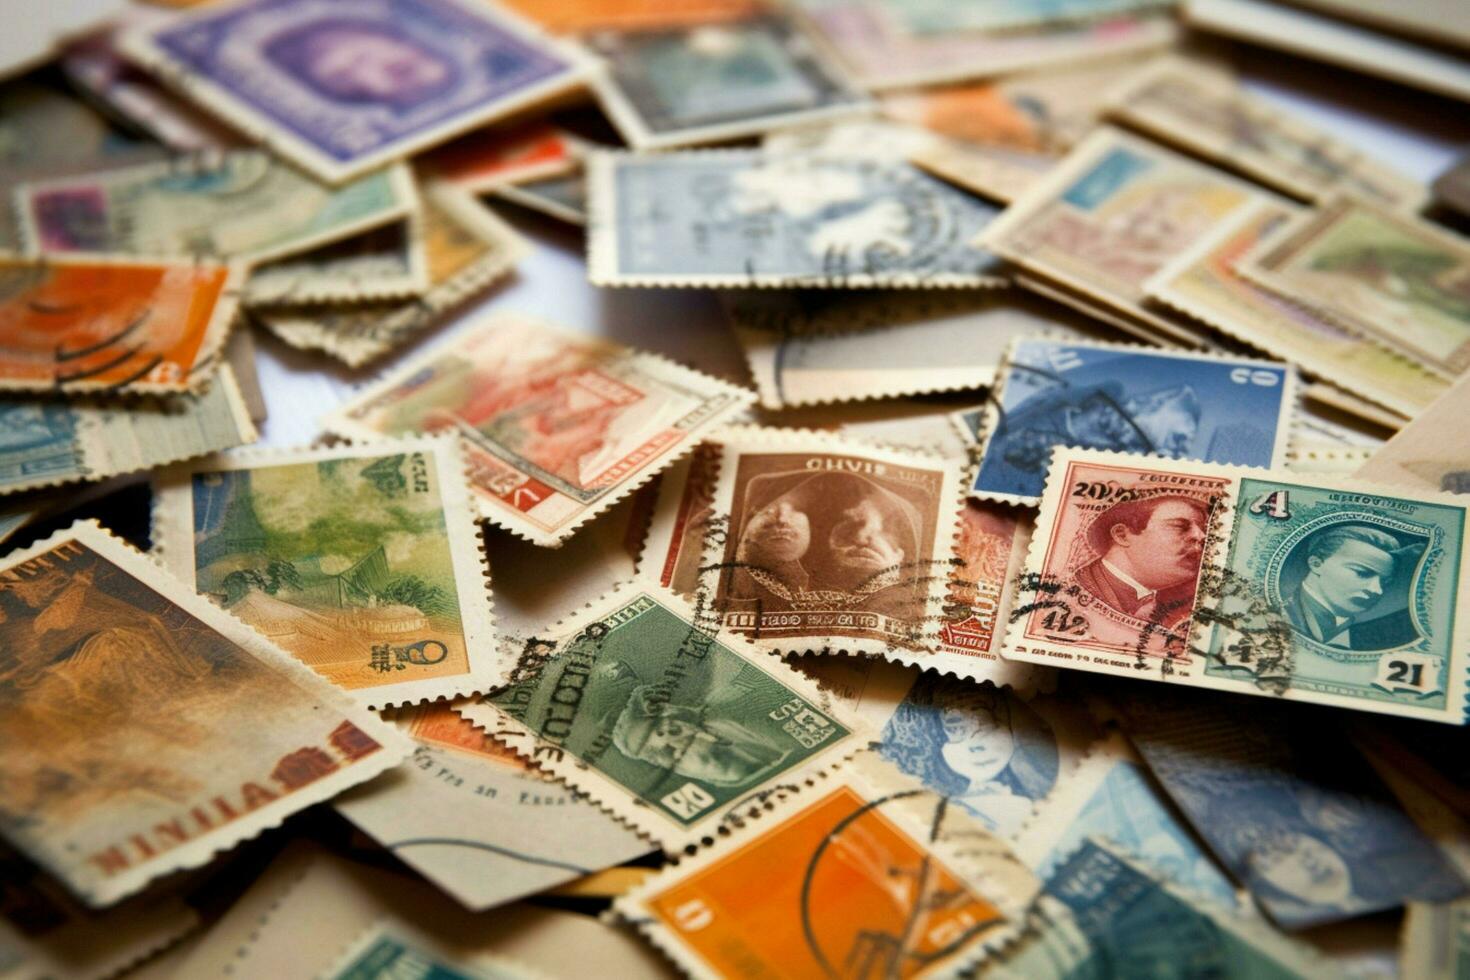 vintage cartões postais e selos coletado foto